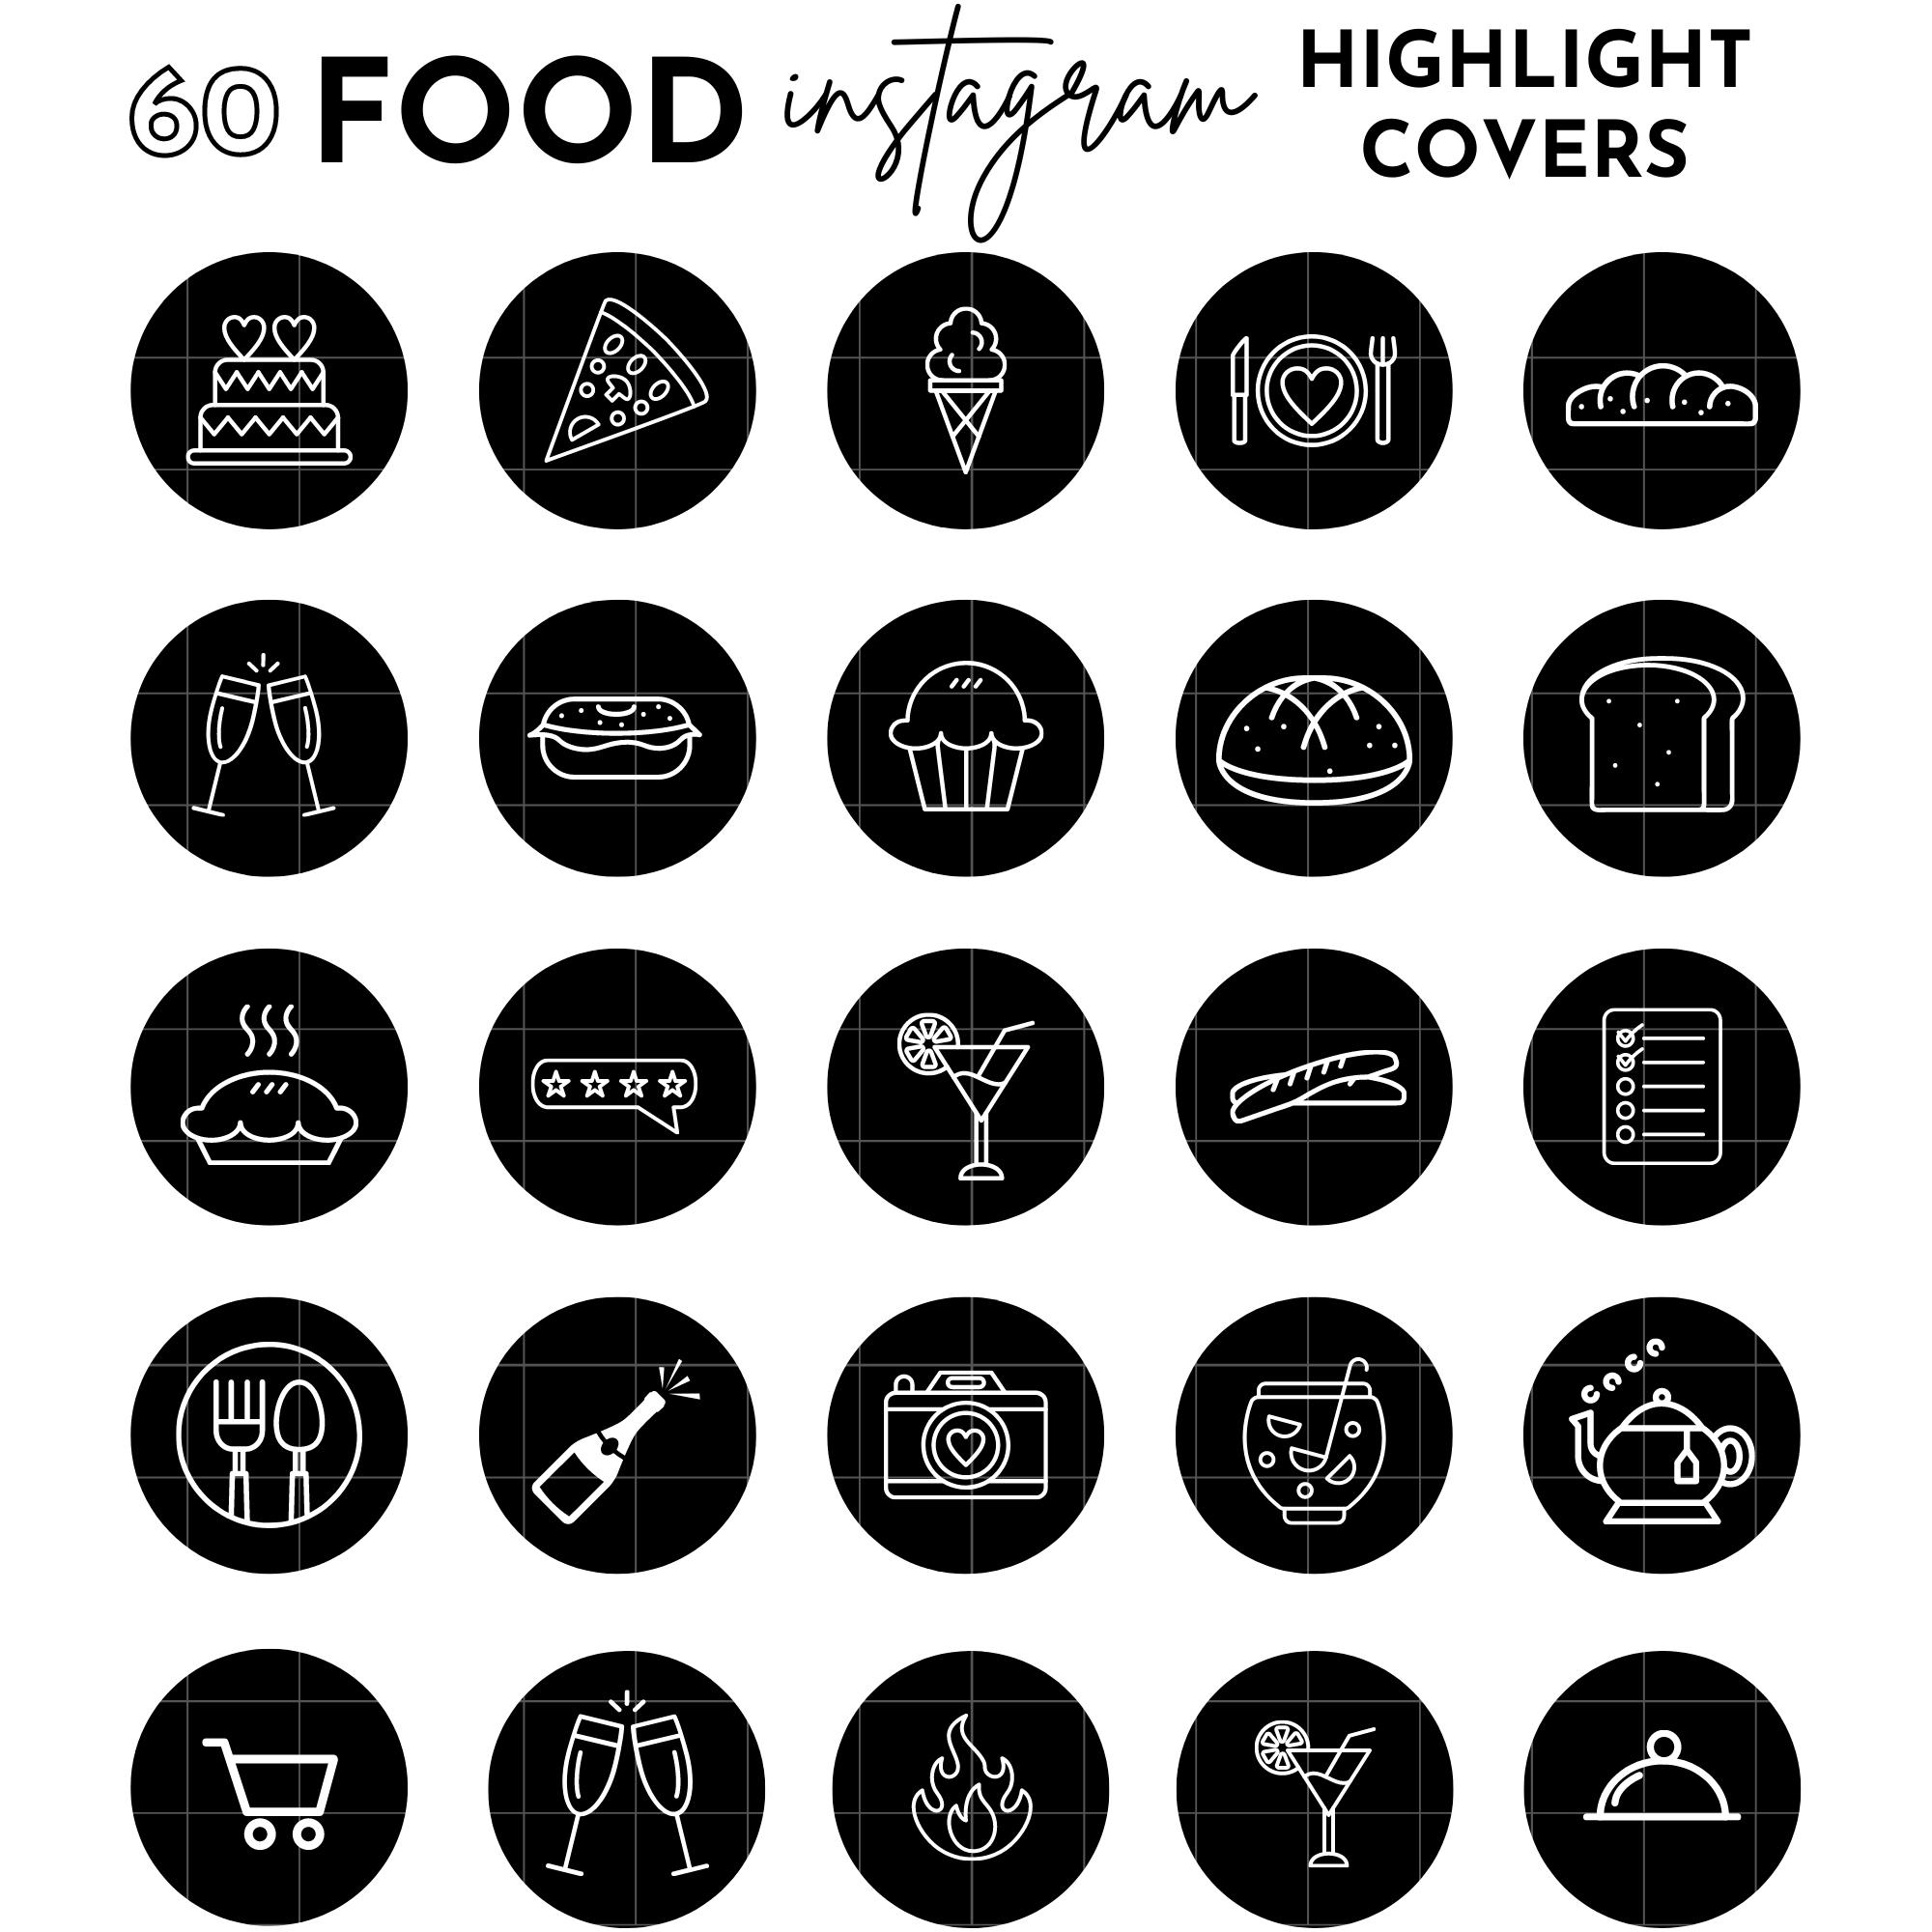 Biểu tượng món ăn đen là một xu hướng nổi bật, tạo nên sự khác biệt cho ảnh của bạn. Cùng khám phá bộ sưu tập Black food icons để mang đến cho ảnh của bạn một phong cách độc đáo và thú vị.